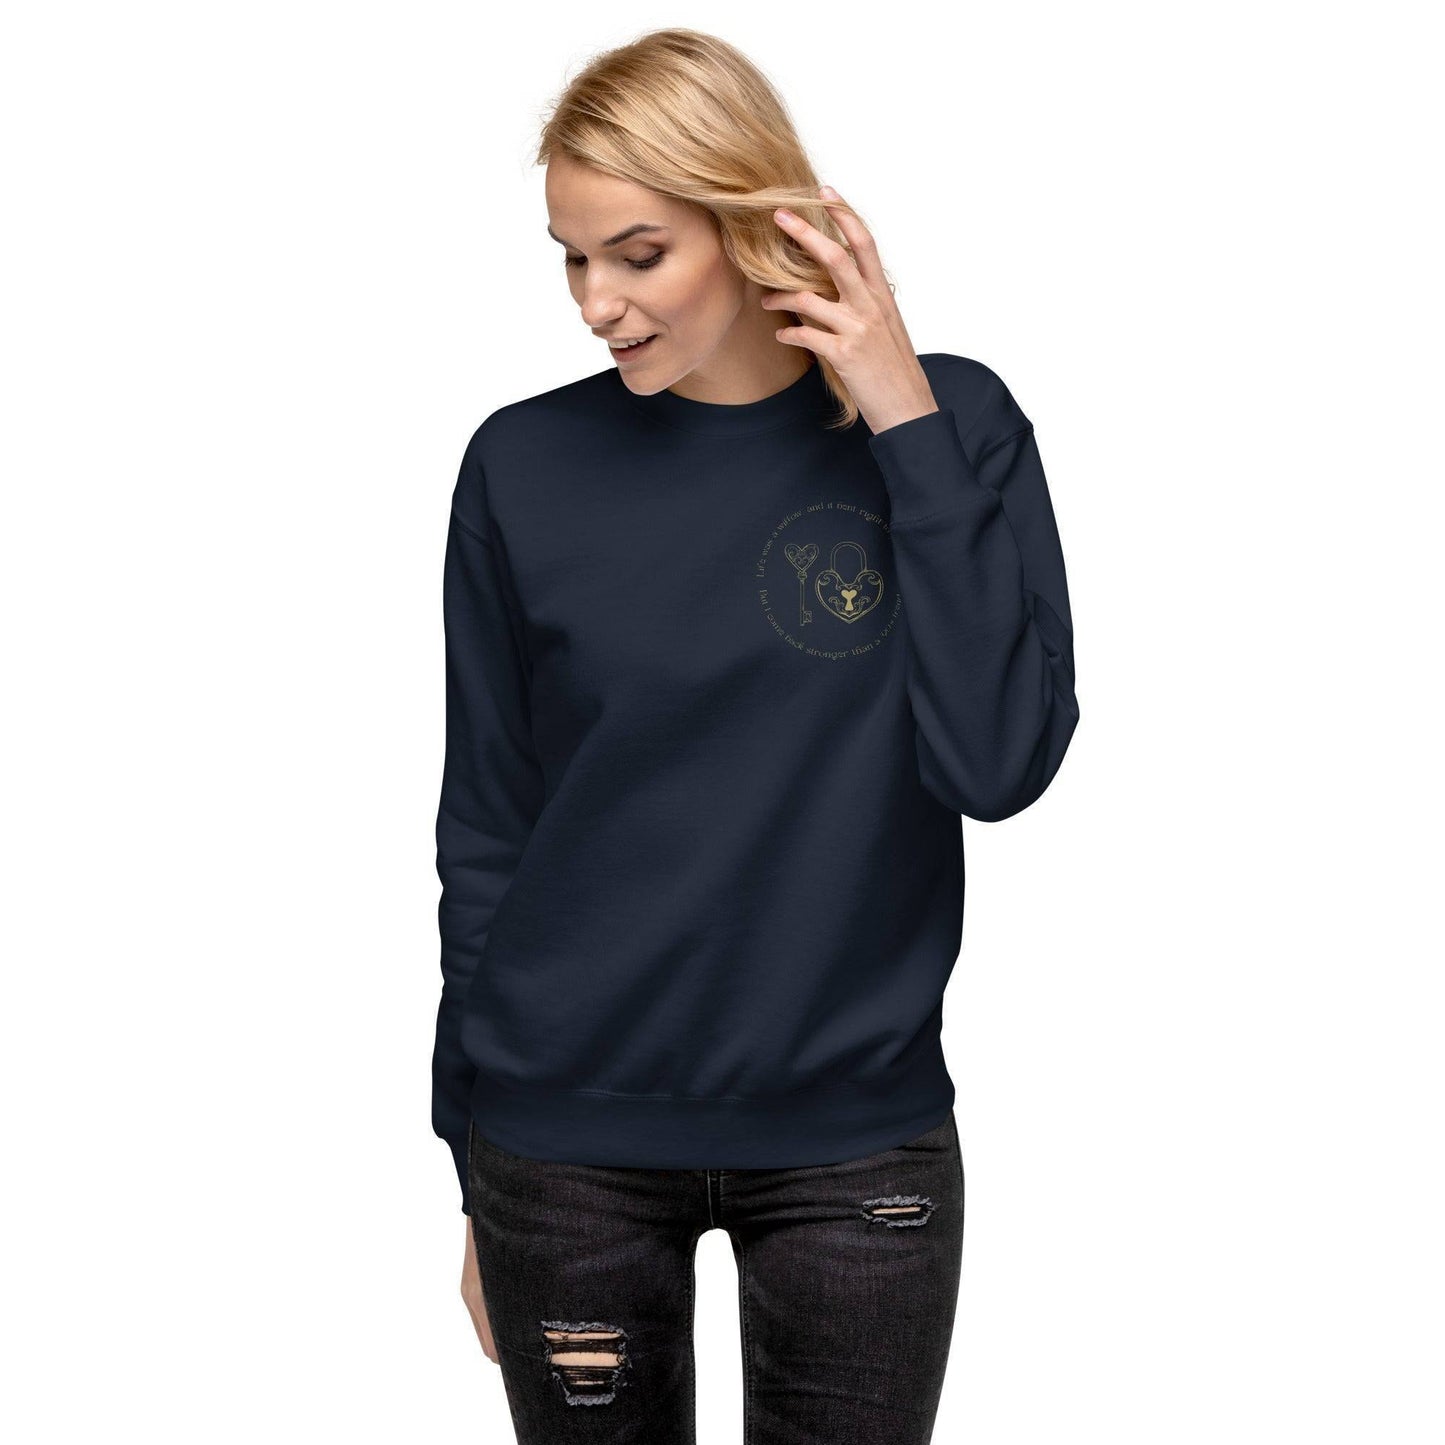 Taylor Swift Willow Embroidered Sweatshirt Navy Blazer